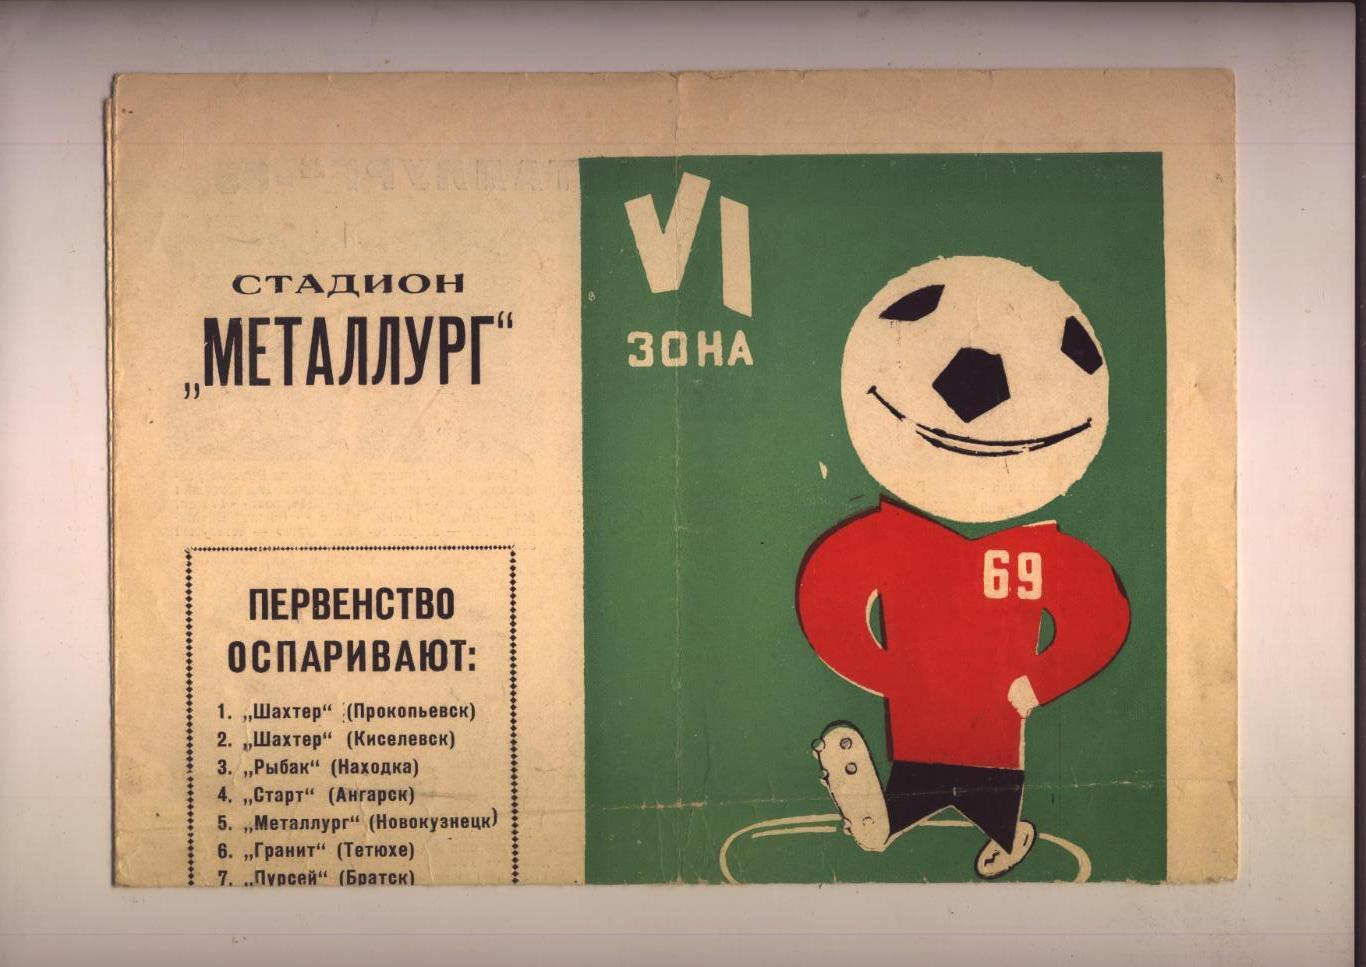 Футбол Первенство РСФСР Класс Б VI зона Металлург Новокузнецк Кемеров обл 1969 г